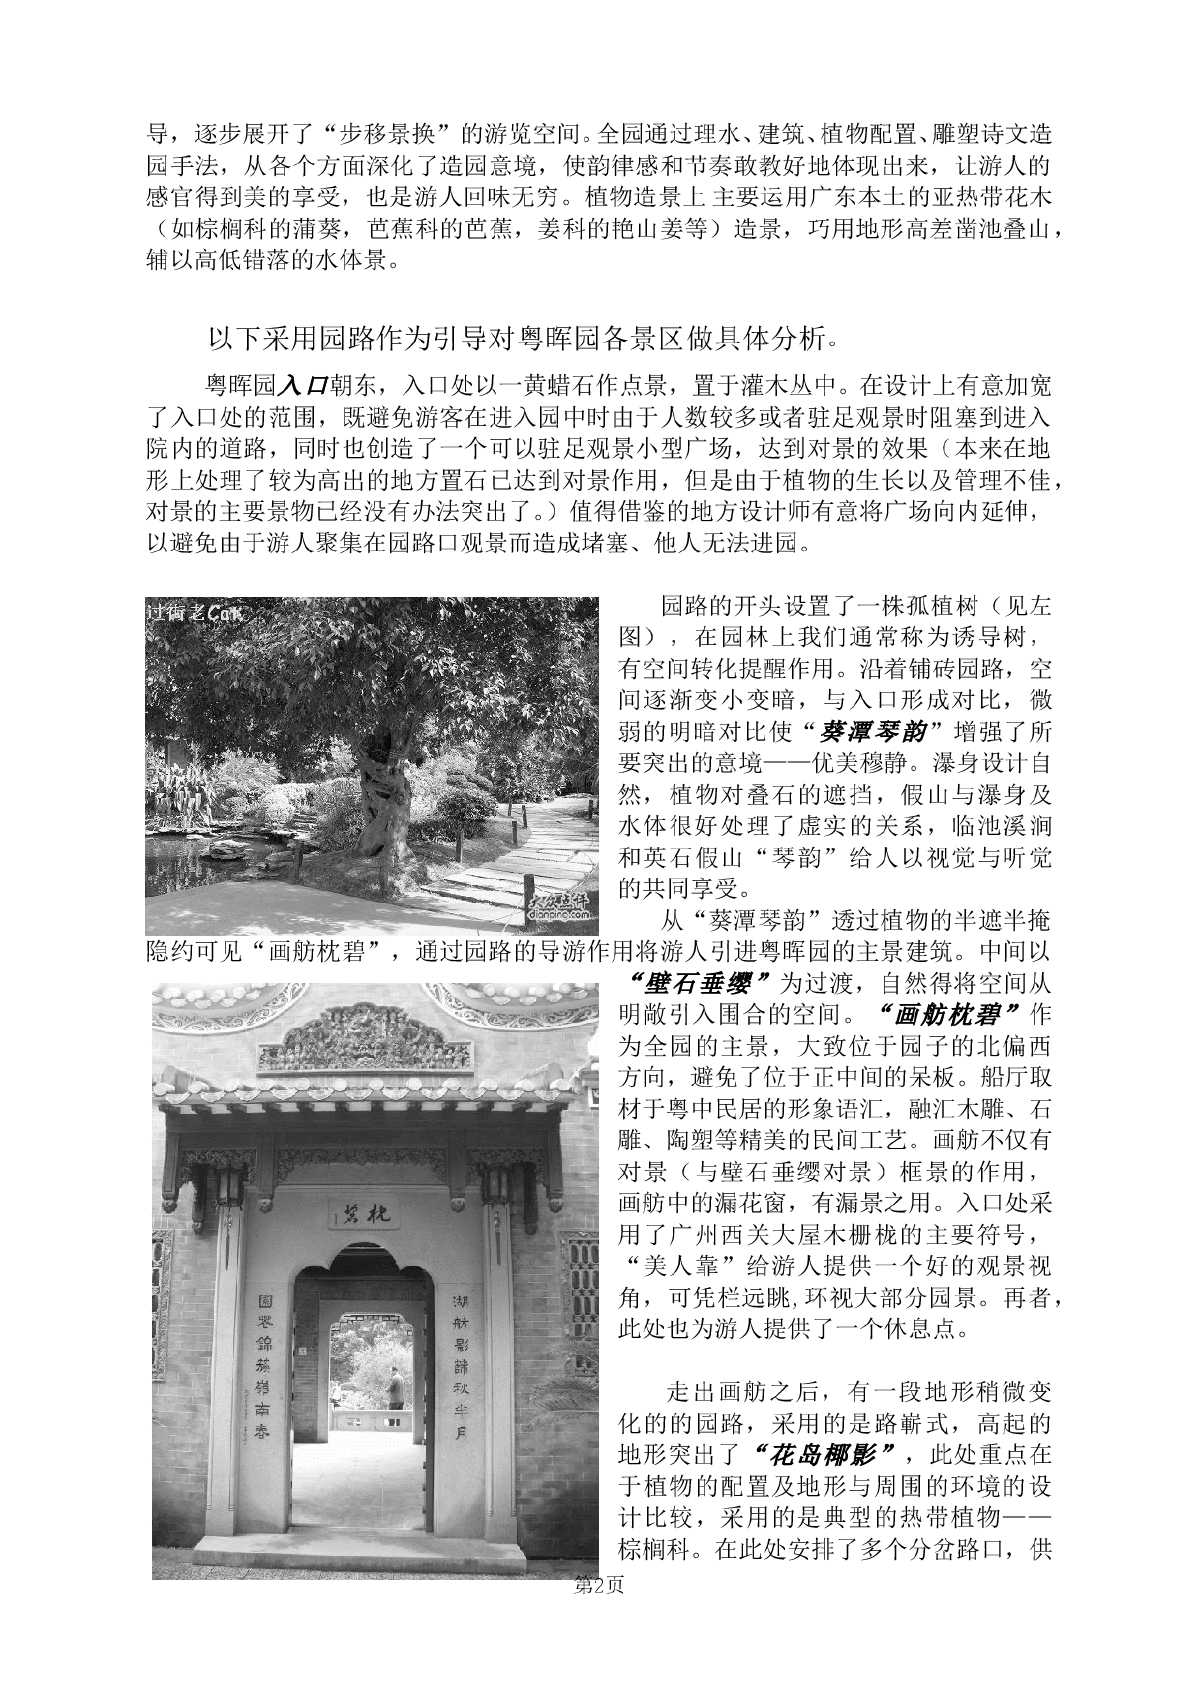 园林景观艺术分析——天河公园粤晖园-图二